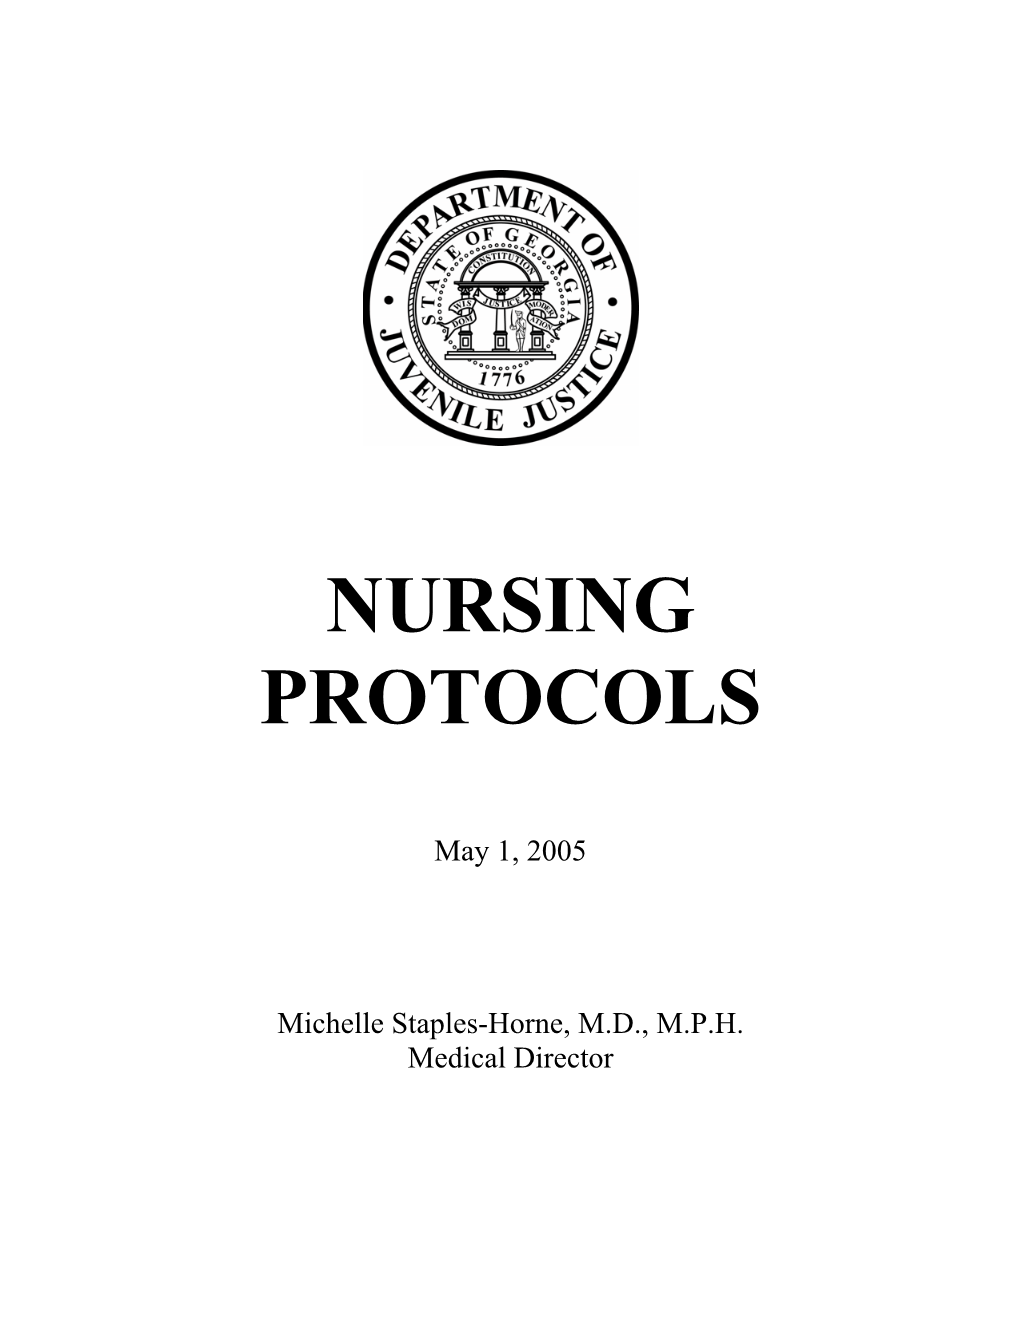 DJJ Nursing Protocols